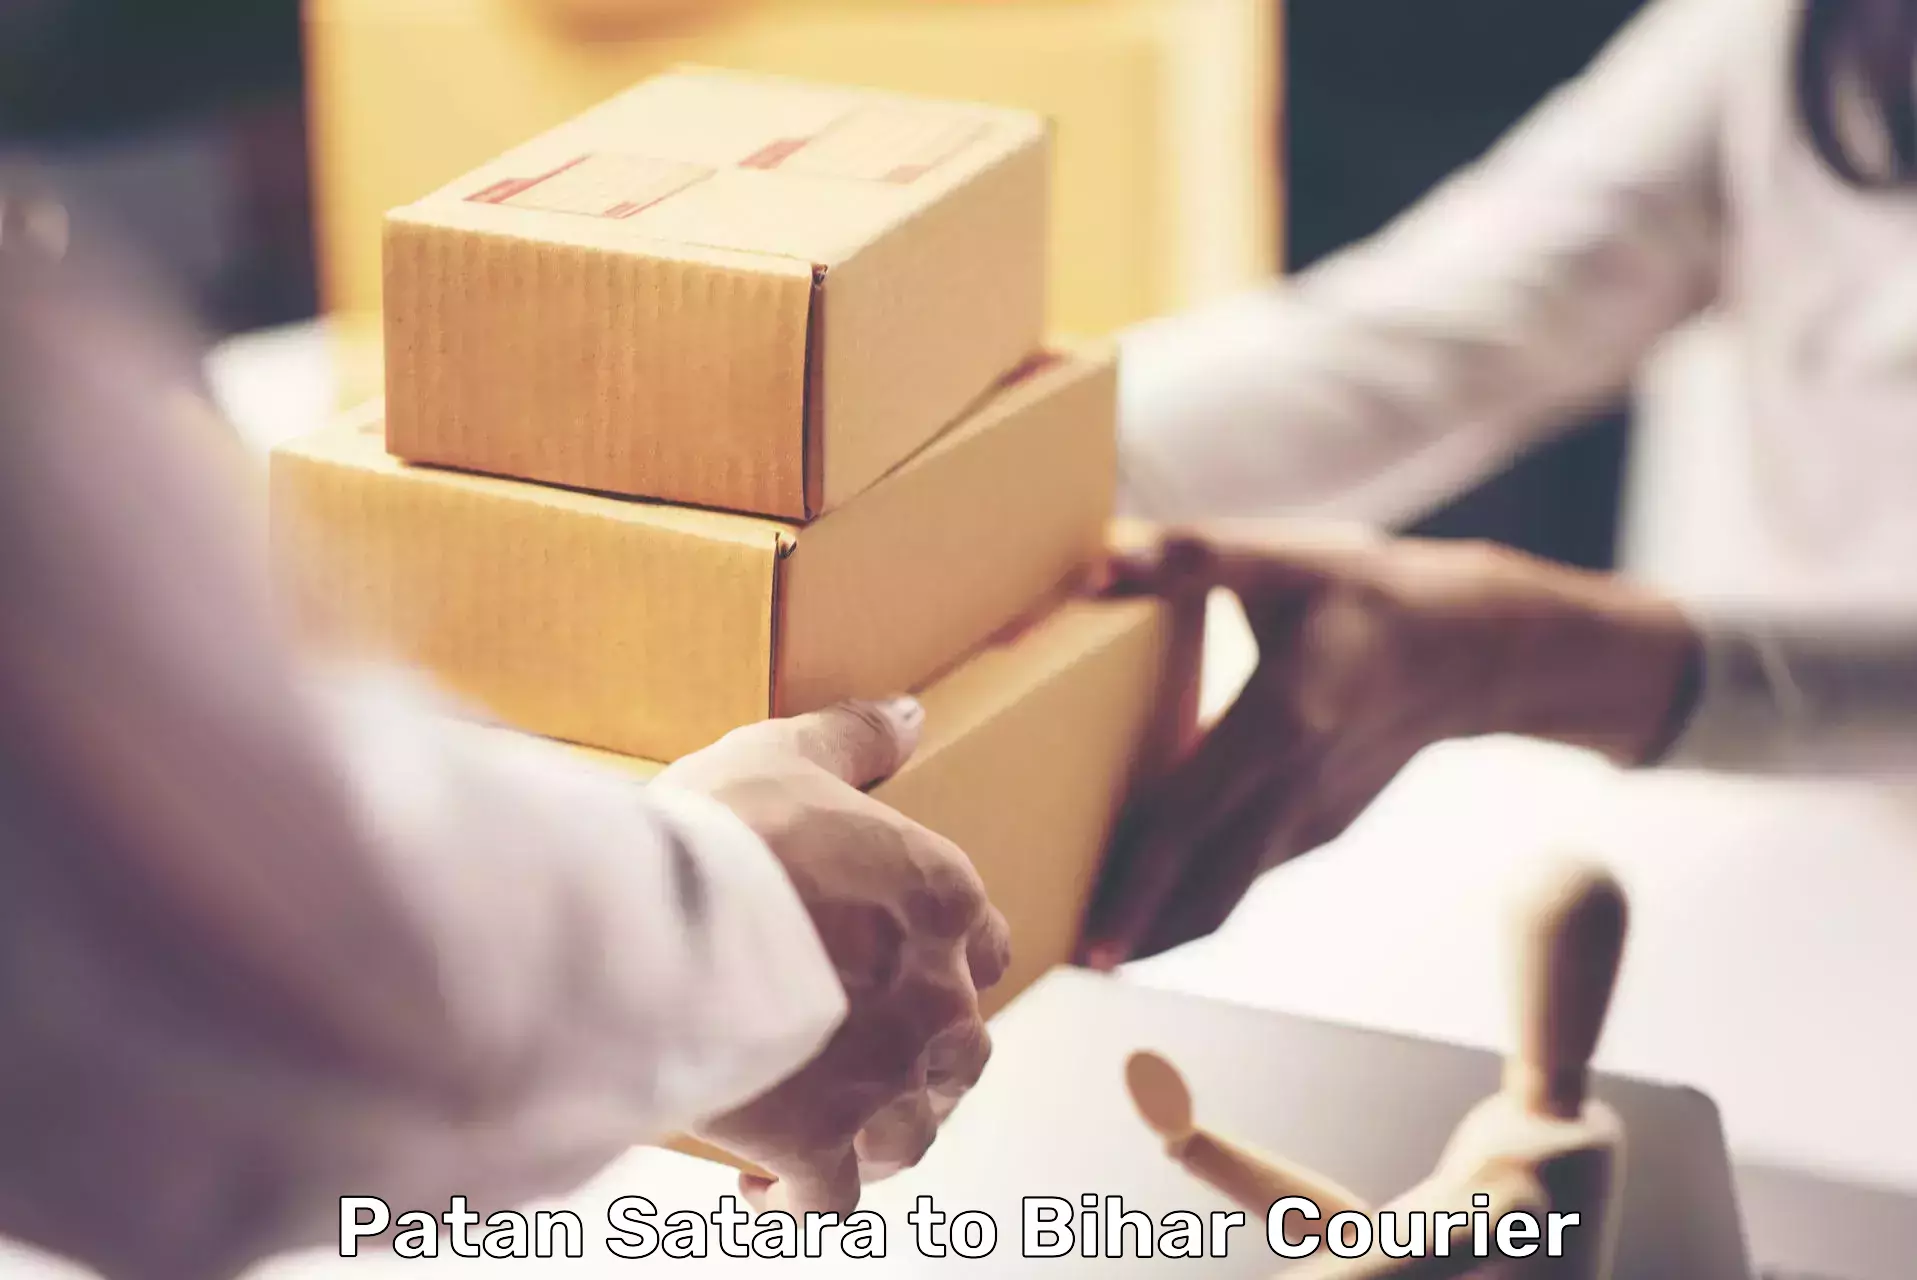 Customer-oriented courier services Patan Satara to Sonbarsa